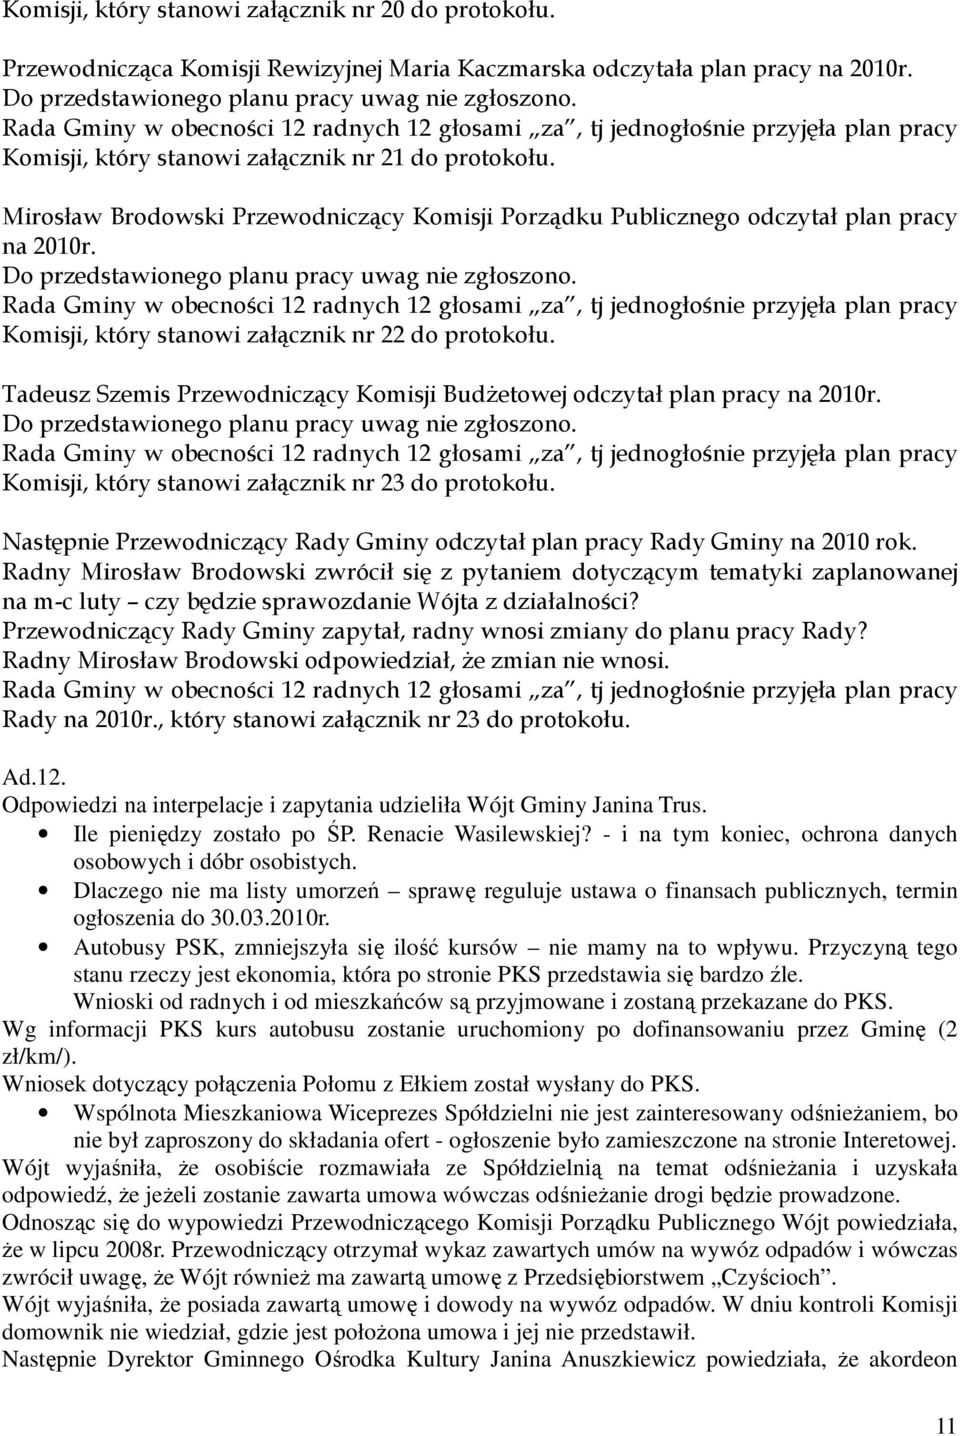 Mirosław Brodowski Przewodniczący Komisji Porządku Publicznego odczytał plan pracy na 2010r. Do przedstawionego planu pracy uwag nie zgłoszono.